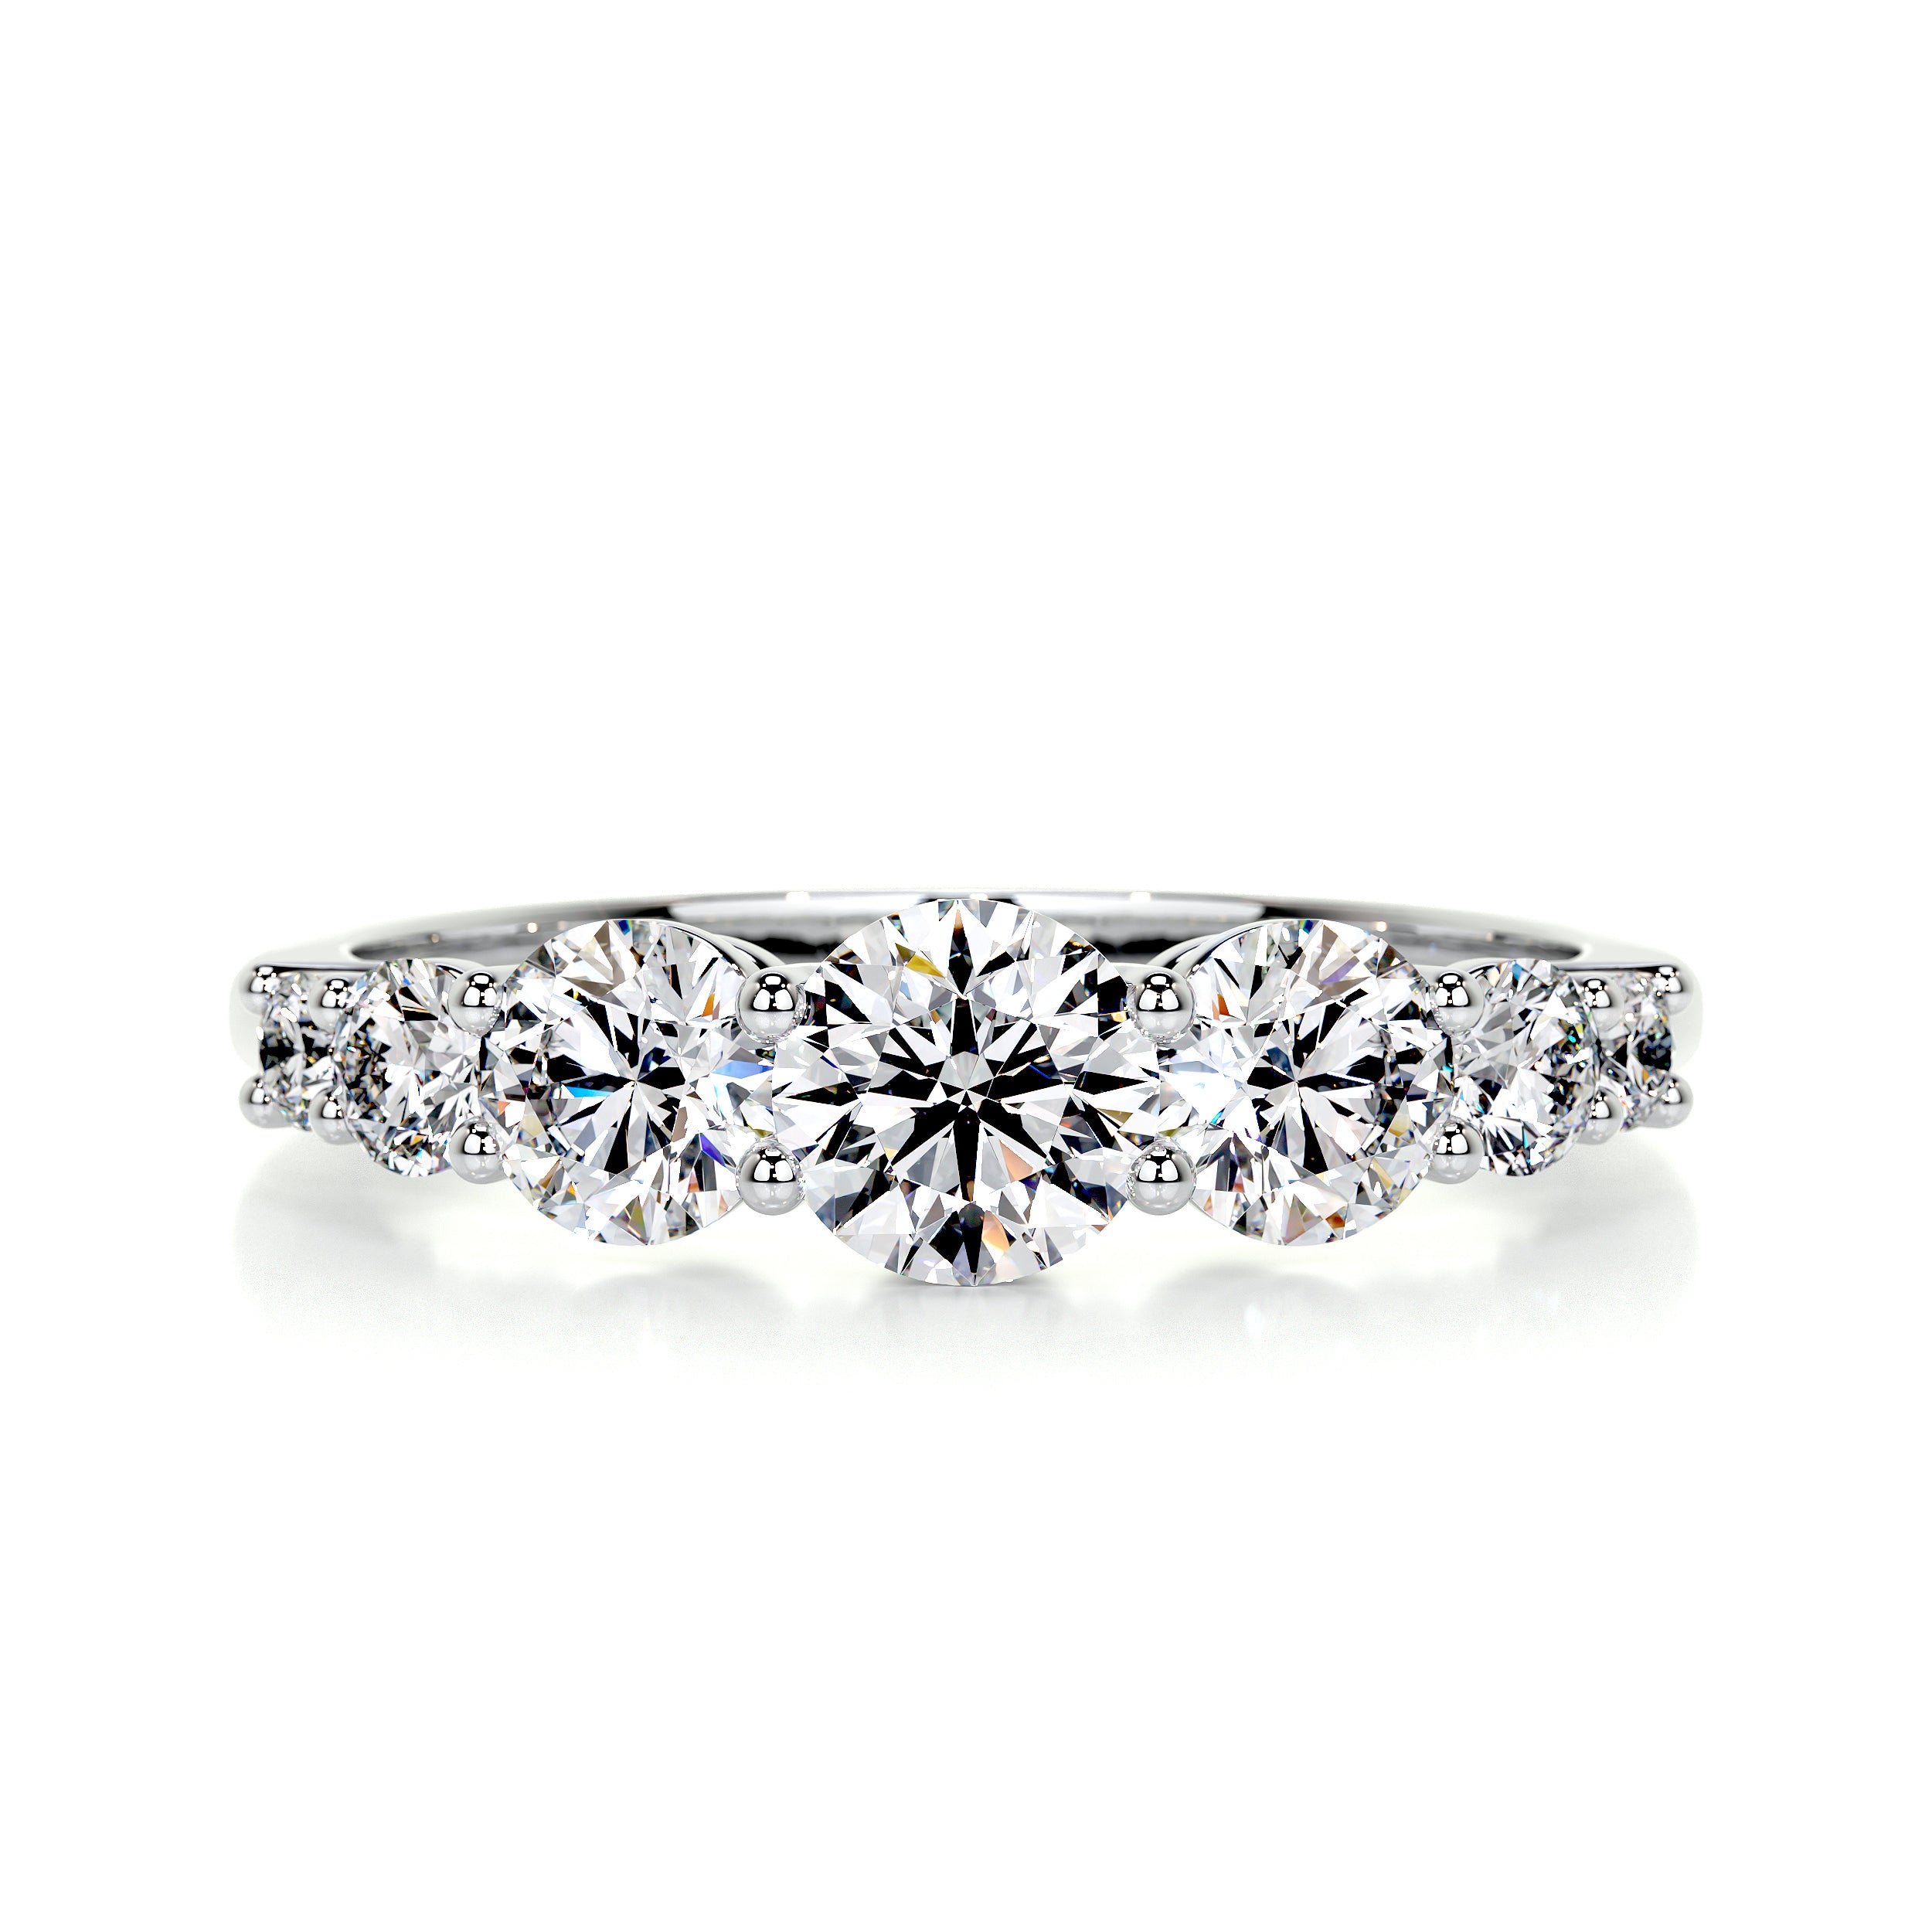 Makenzi Diamond Engagement Ring -18K White Gold